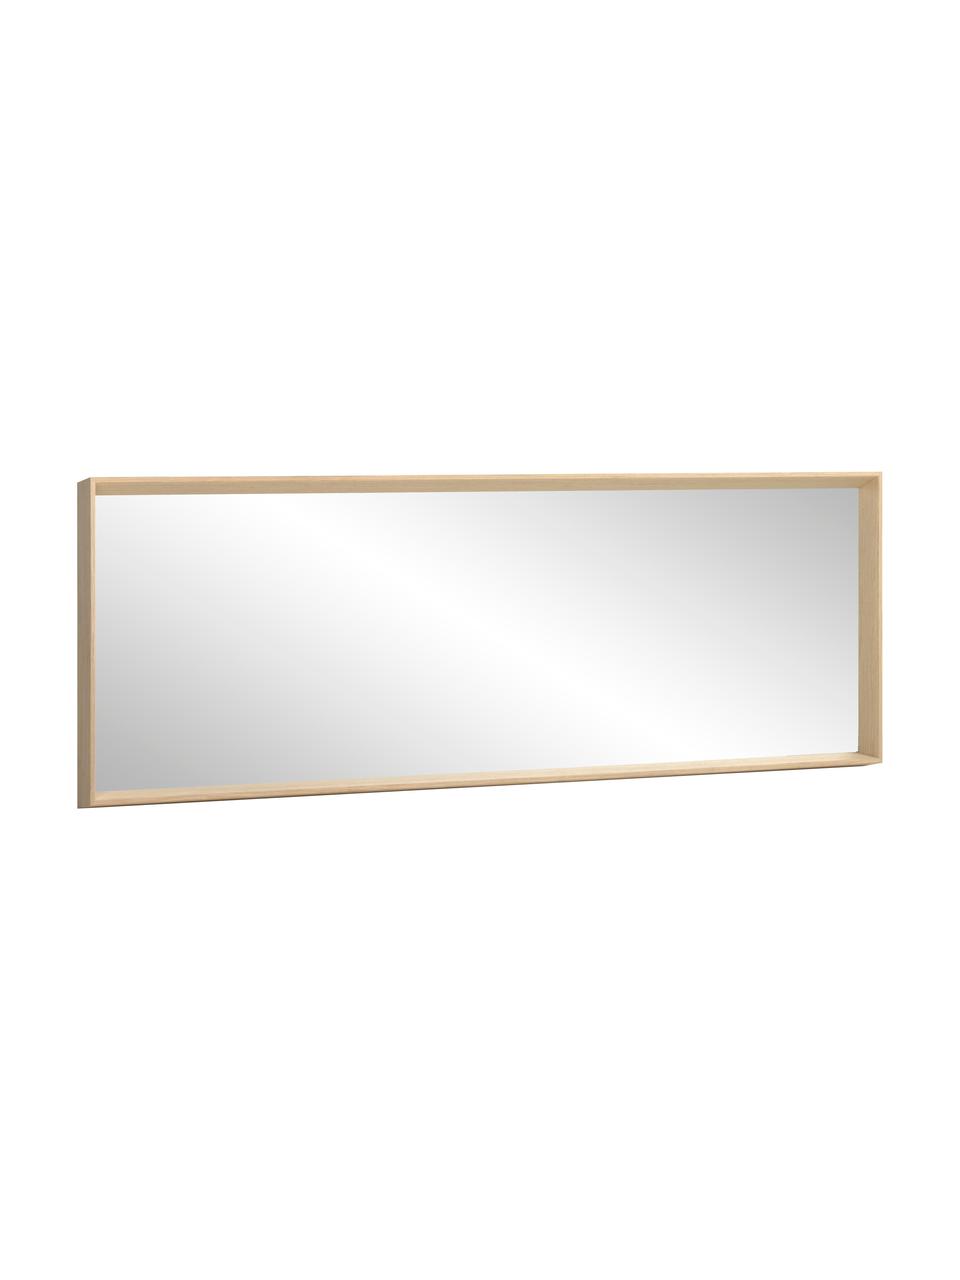 Specchio rettangolare da parete con cornice in legno marrone chiaro Nerina, Cornice: legno, Superficie dello specchio: lastra di vetro, Beige, Larg. 52 x Alt. 152 cm